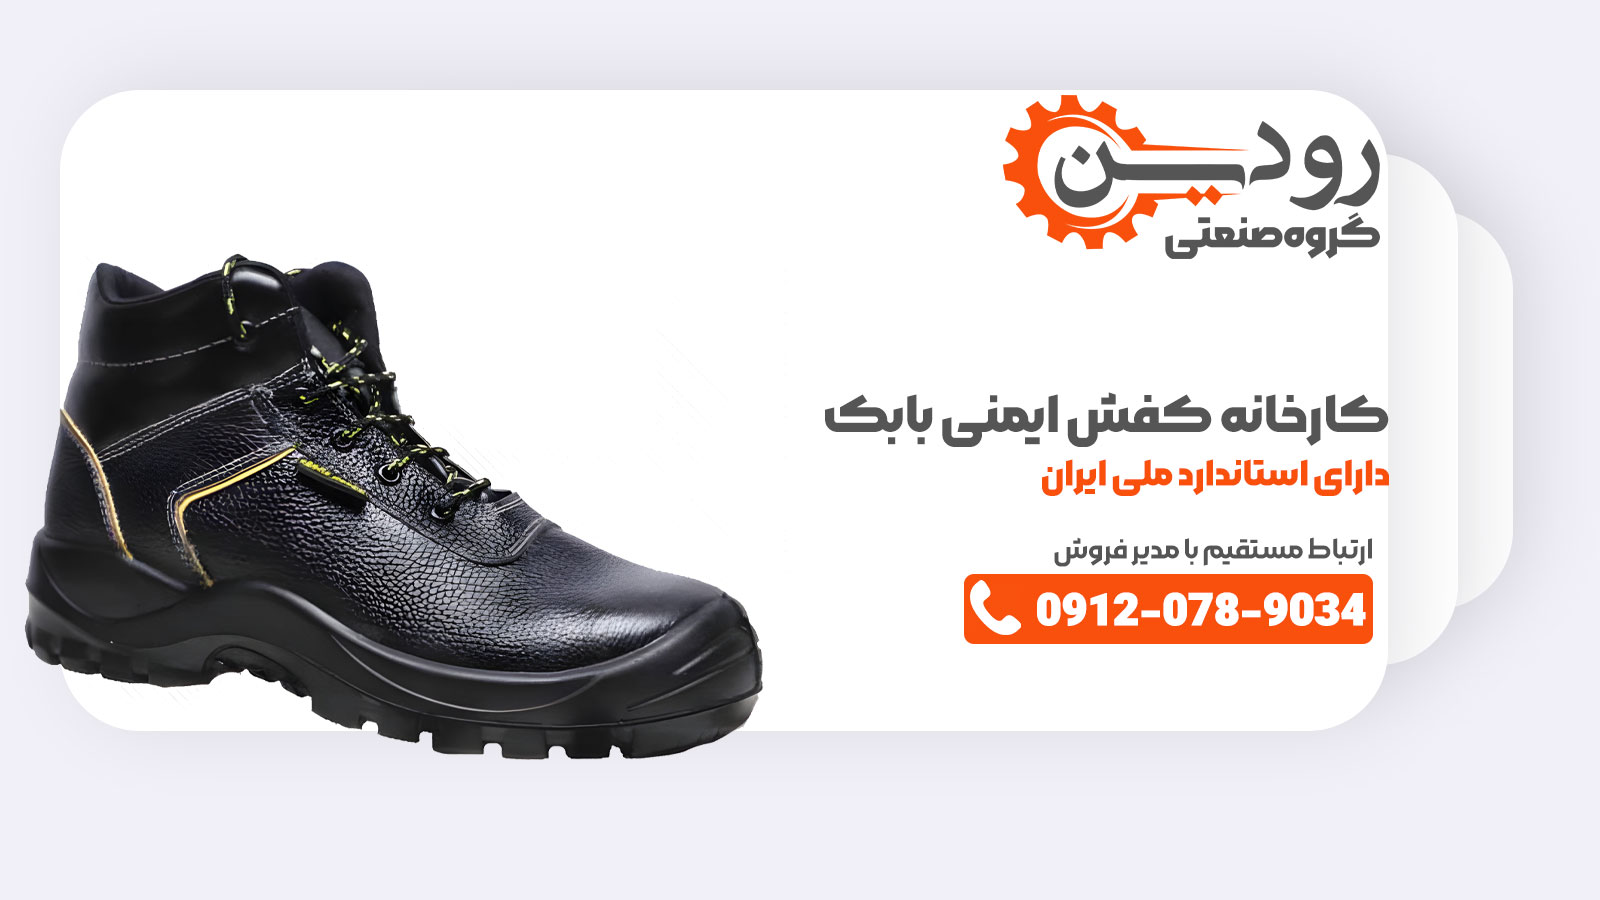 کارخانه کفش ایمنی بابک تولید خود را گسترش داده و توانسته جزو معروف ها در تولید کفش ایمنی شود.